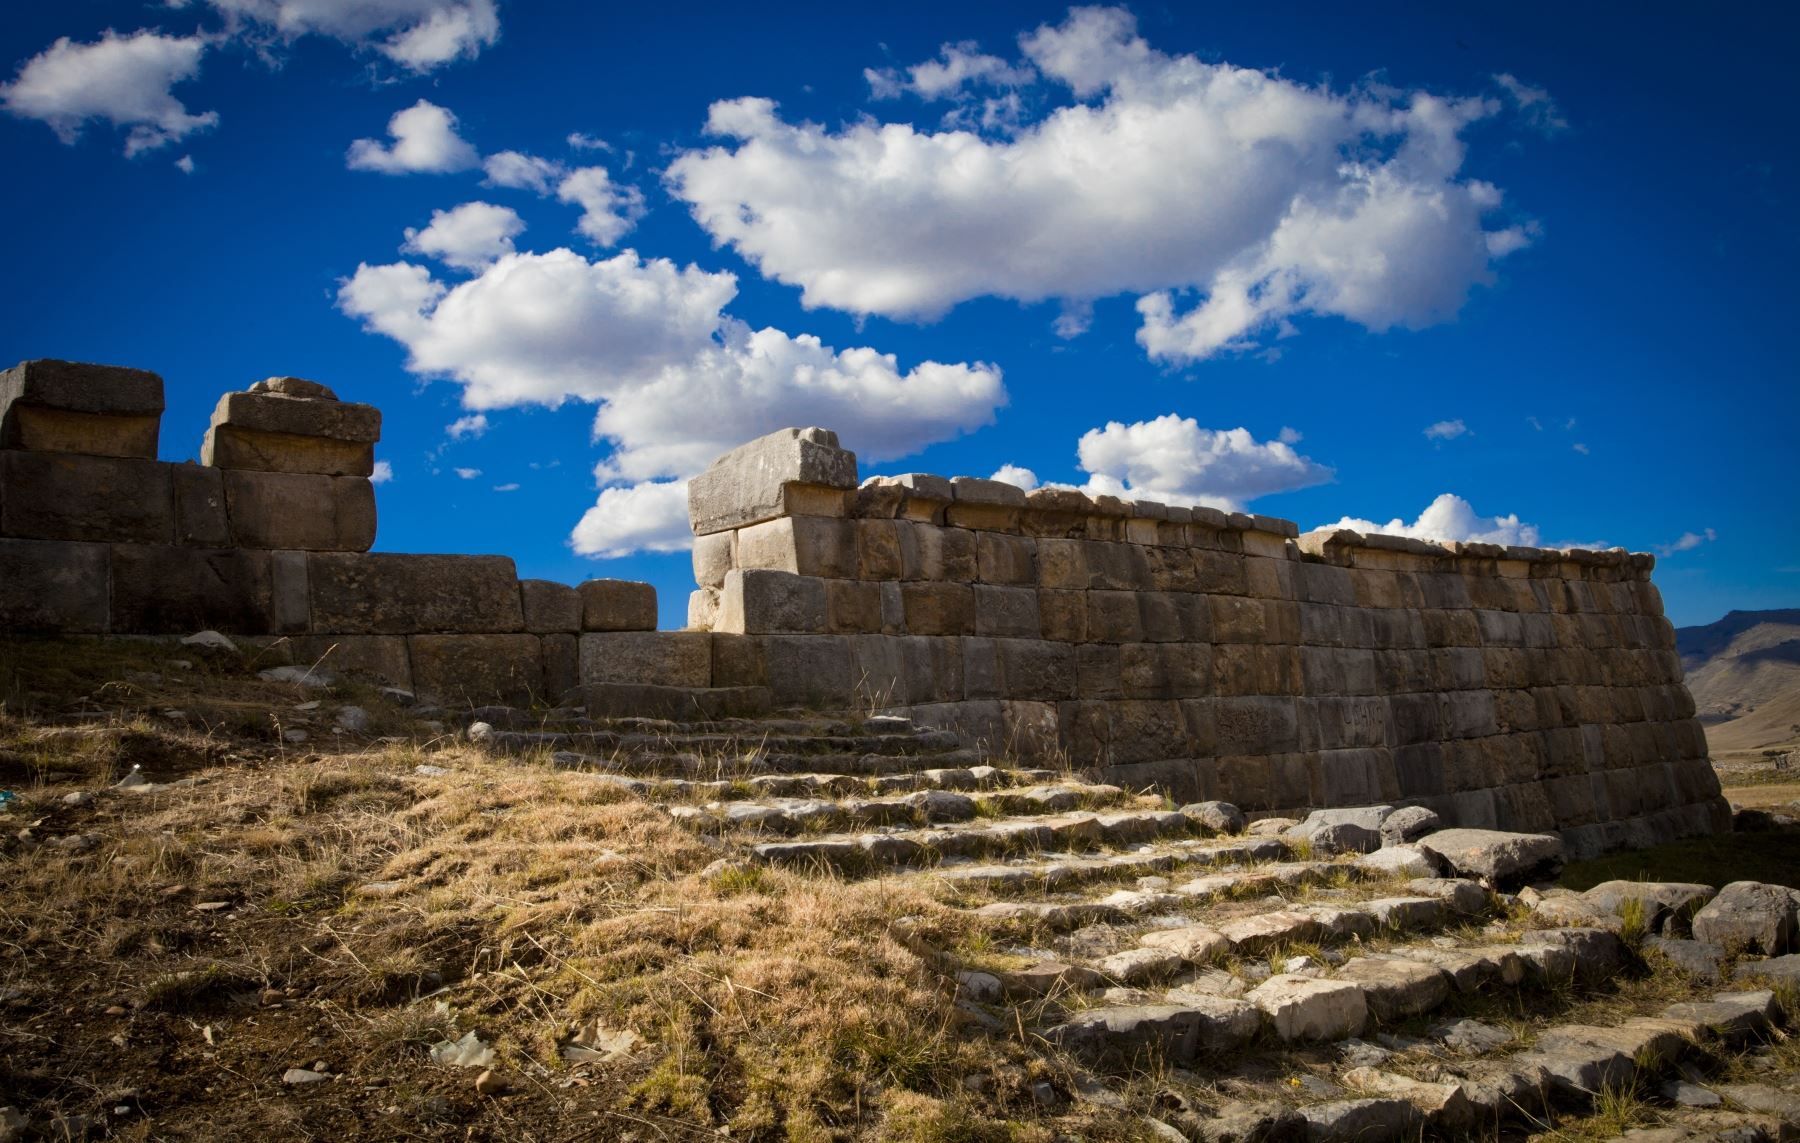 El proyecto ganador del Fondo del Embajador para la Preservación del Patrimonio Cultural 2018 es la conservación y restauración del templo inca en el sitio arqueológico de Huánuco Pampa, ubicado en la región Huánuco. A continuación, detalles de este importante legado de la civilización inca. ANDINA/archivo